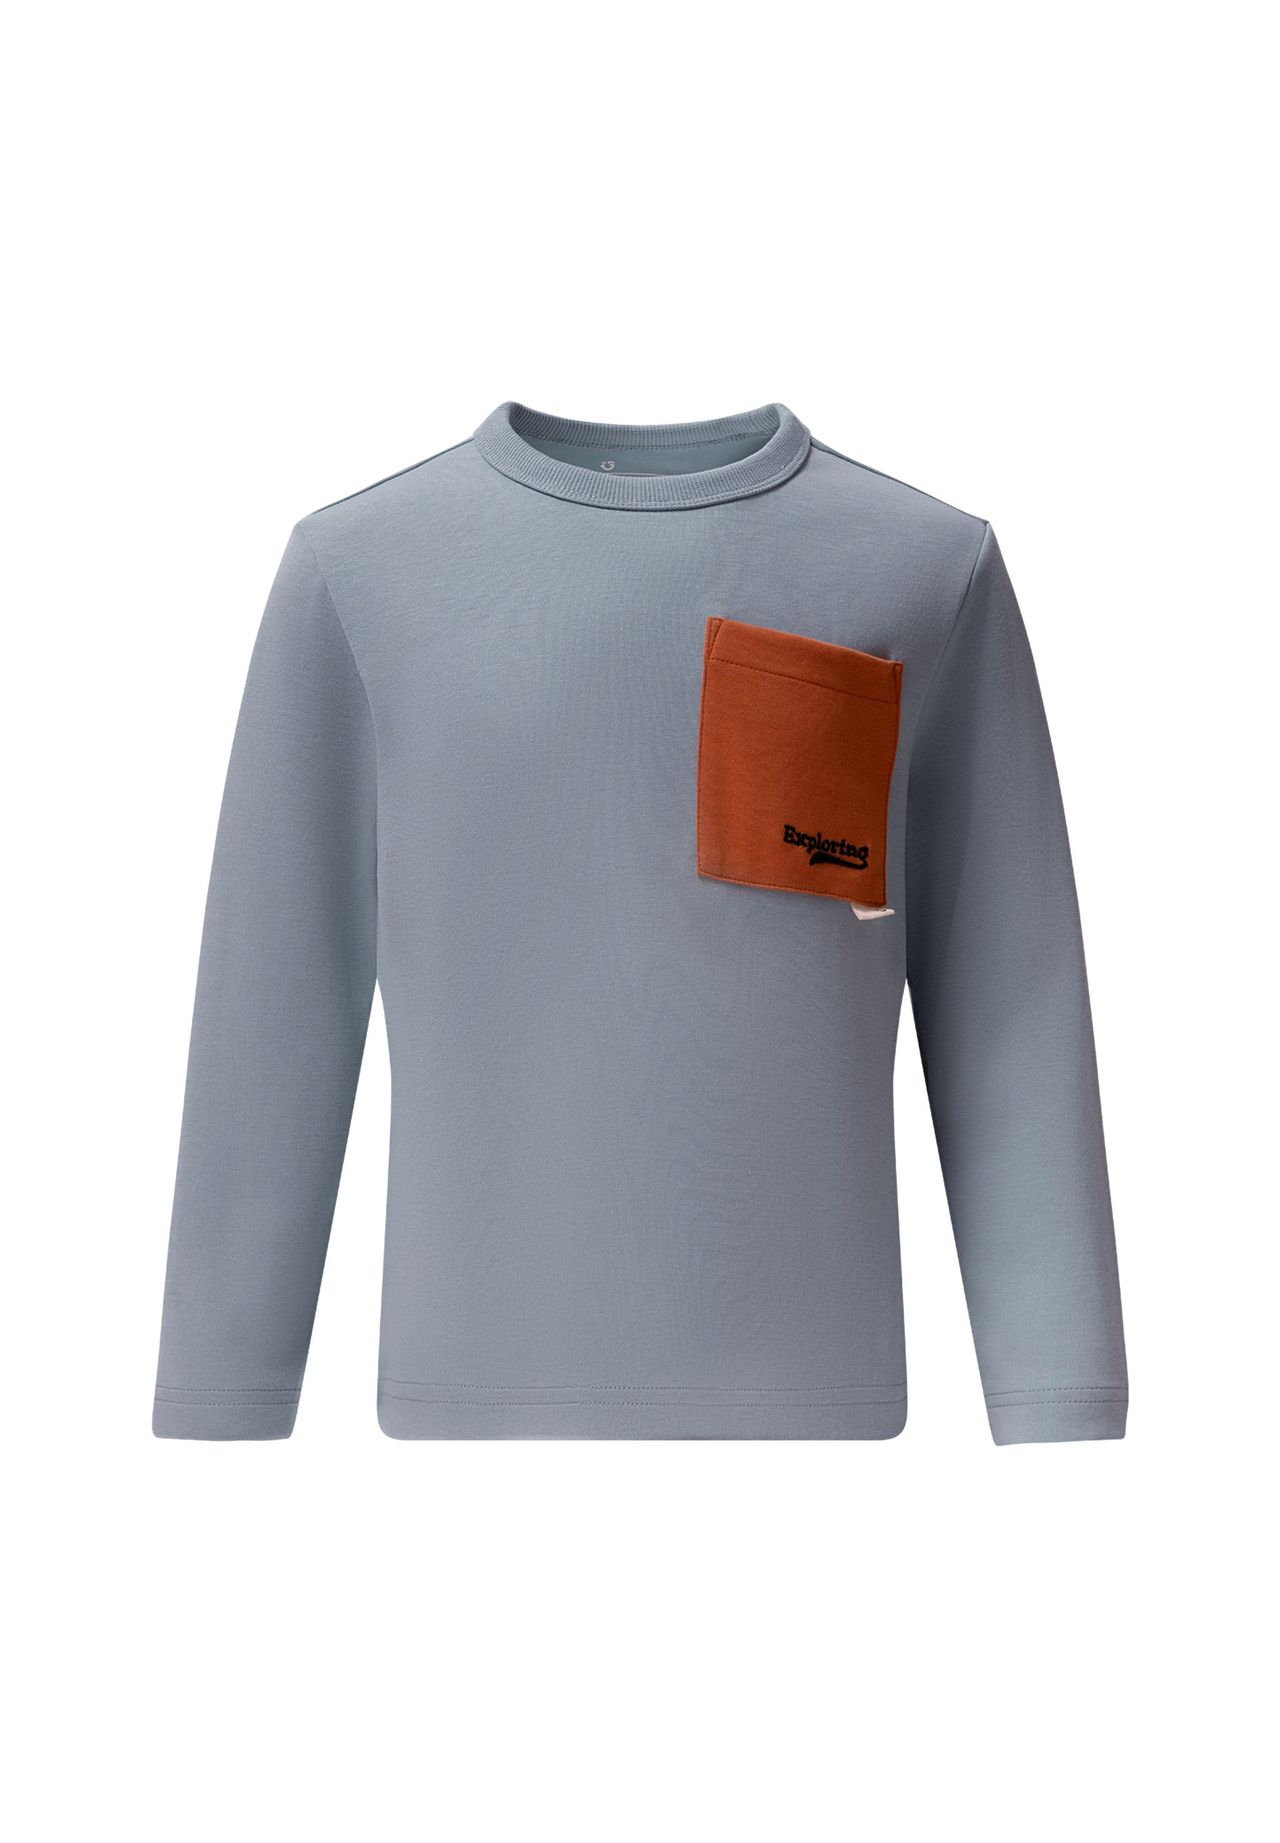 GIORDANO Langarmshirt mit stylischer Kontrast-Tasche | GALERIA